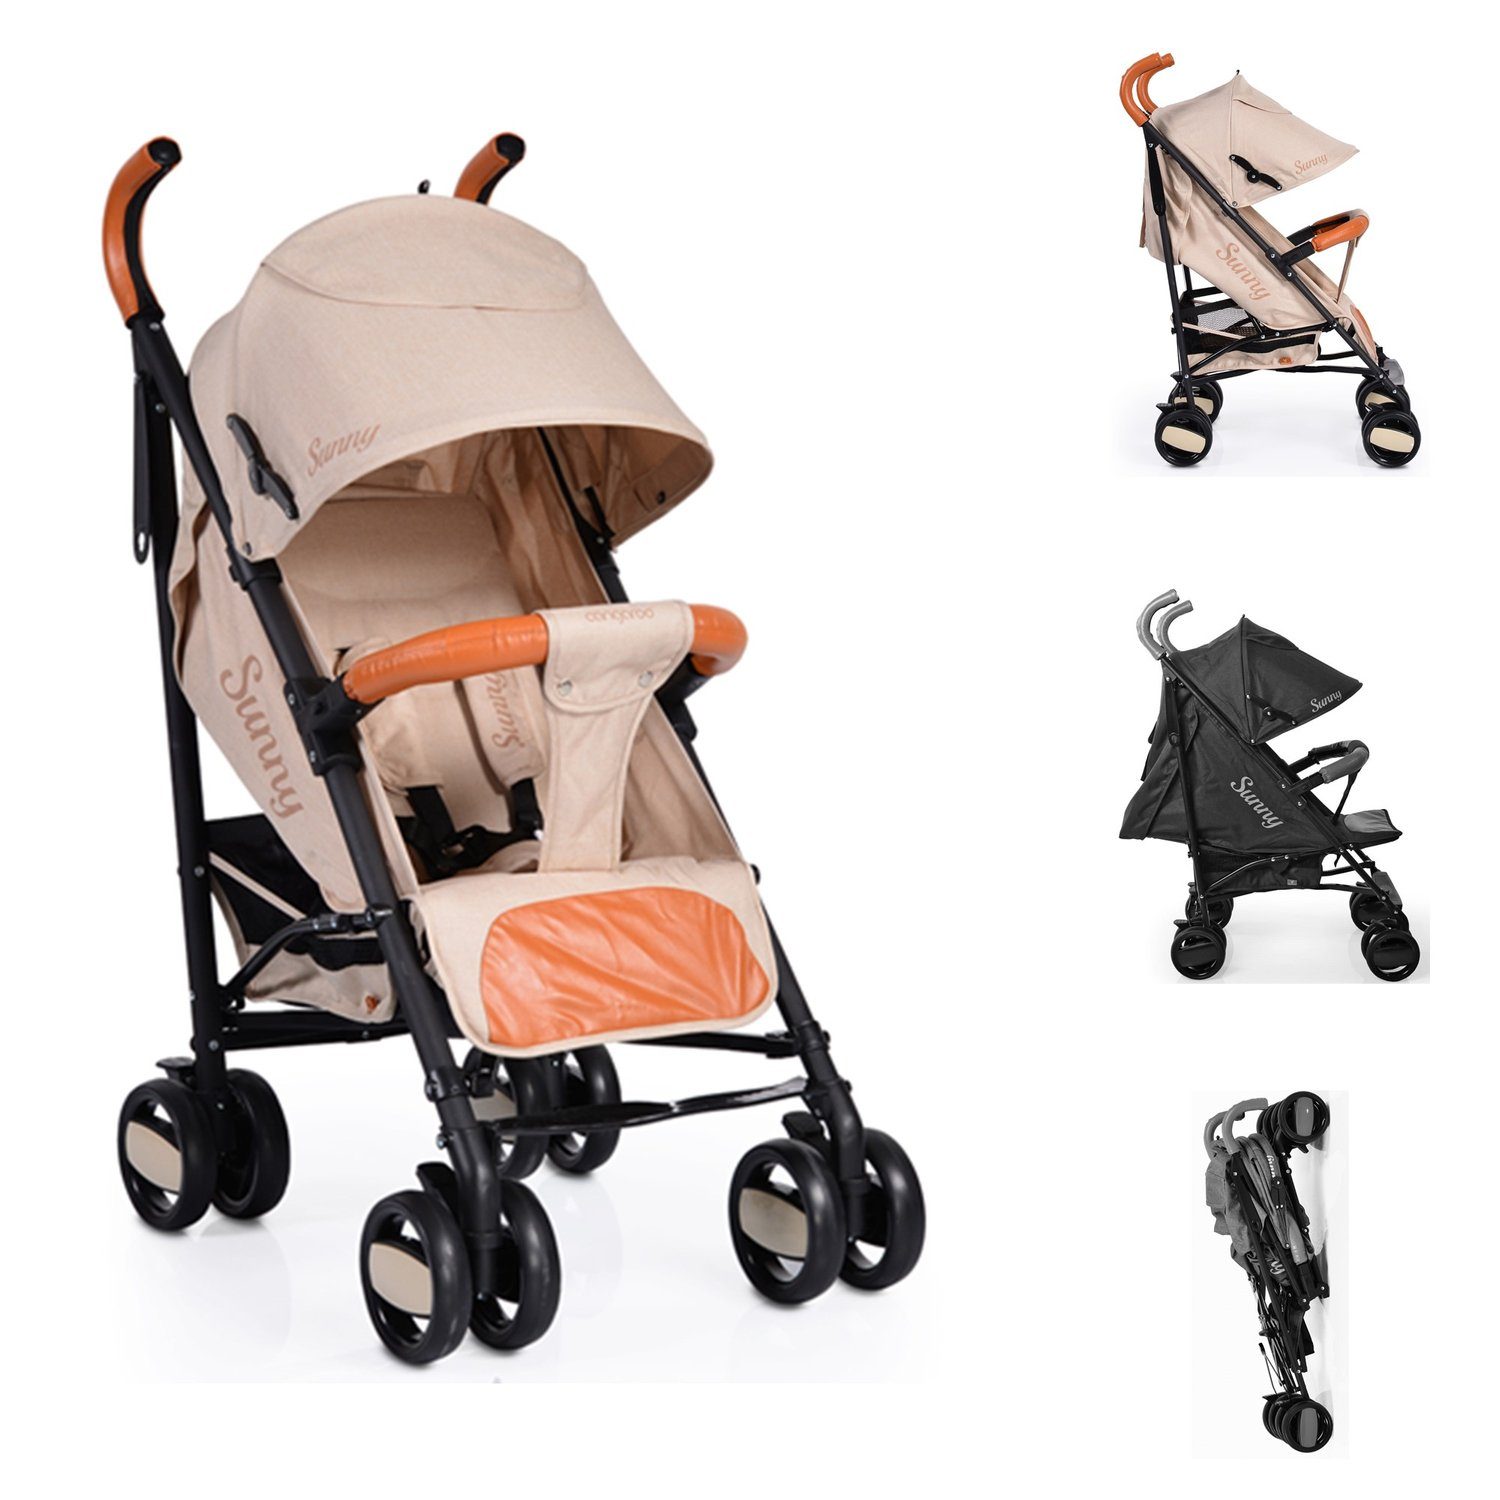 Moni Kinder-Buggy »Kinderwagen, Buggy Sunny«, zusammenklappbar, Leder,  mehrfach verstellbar online kaufen | OTTO